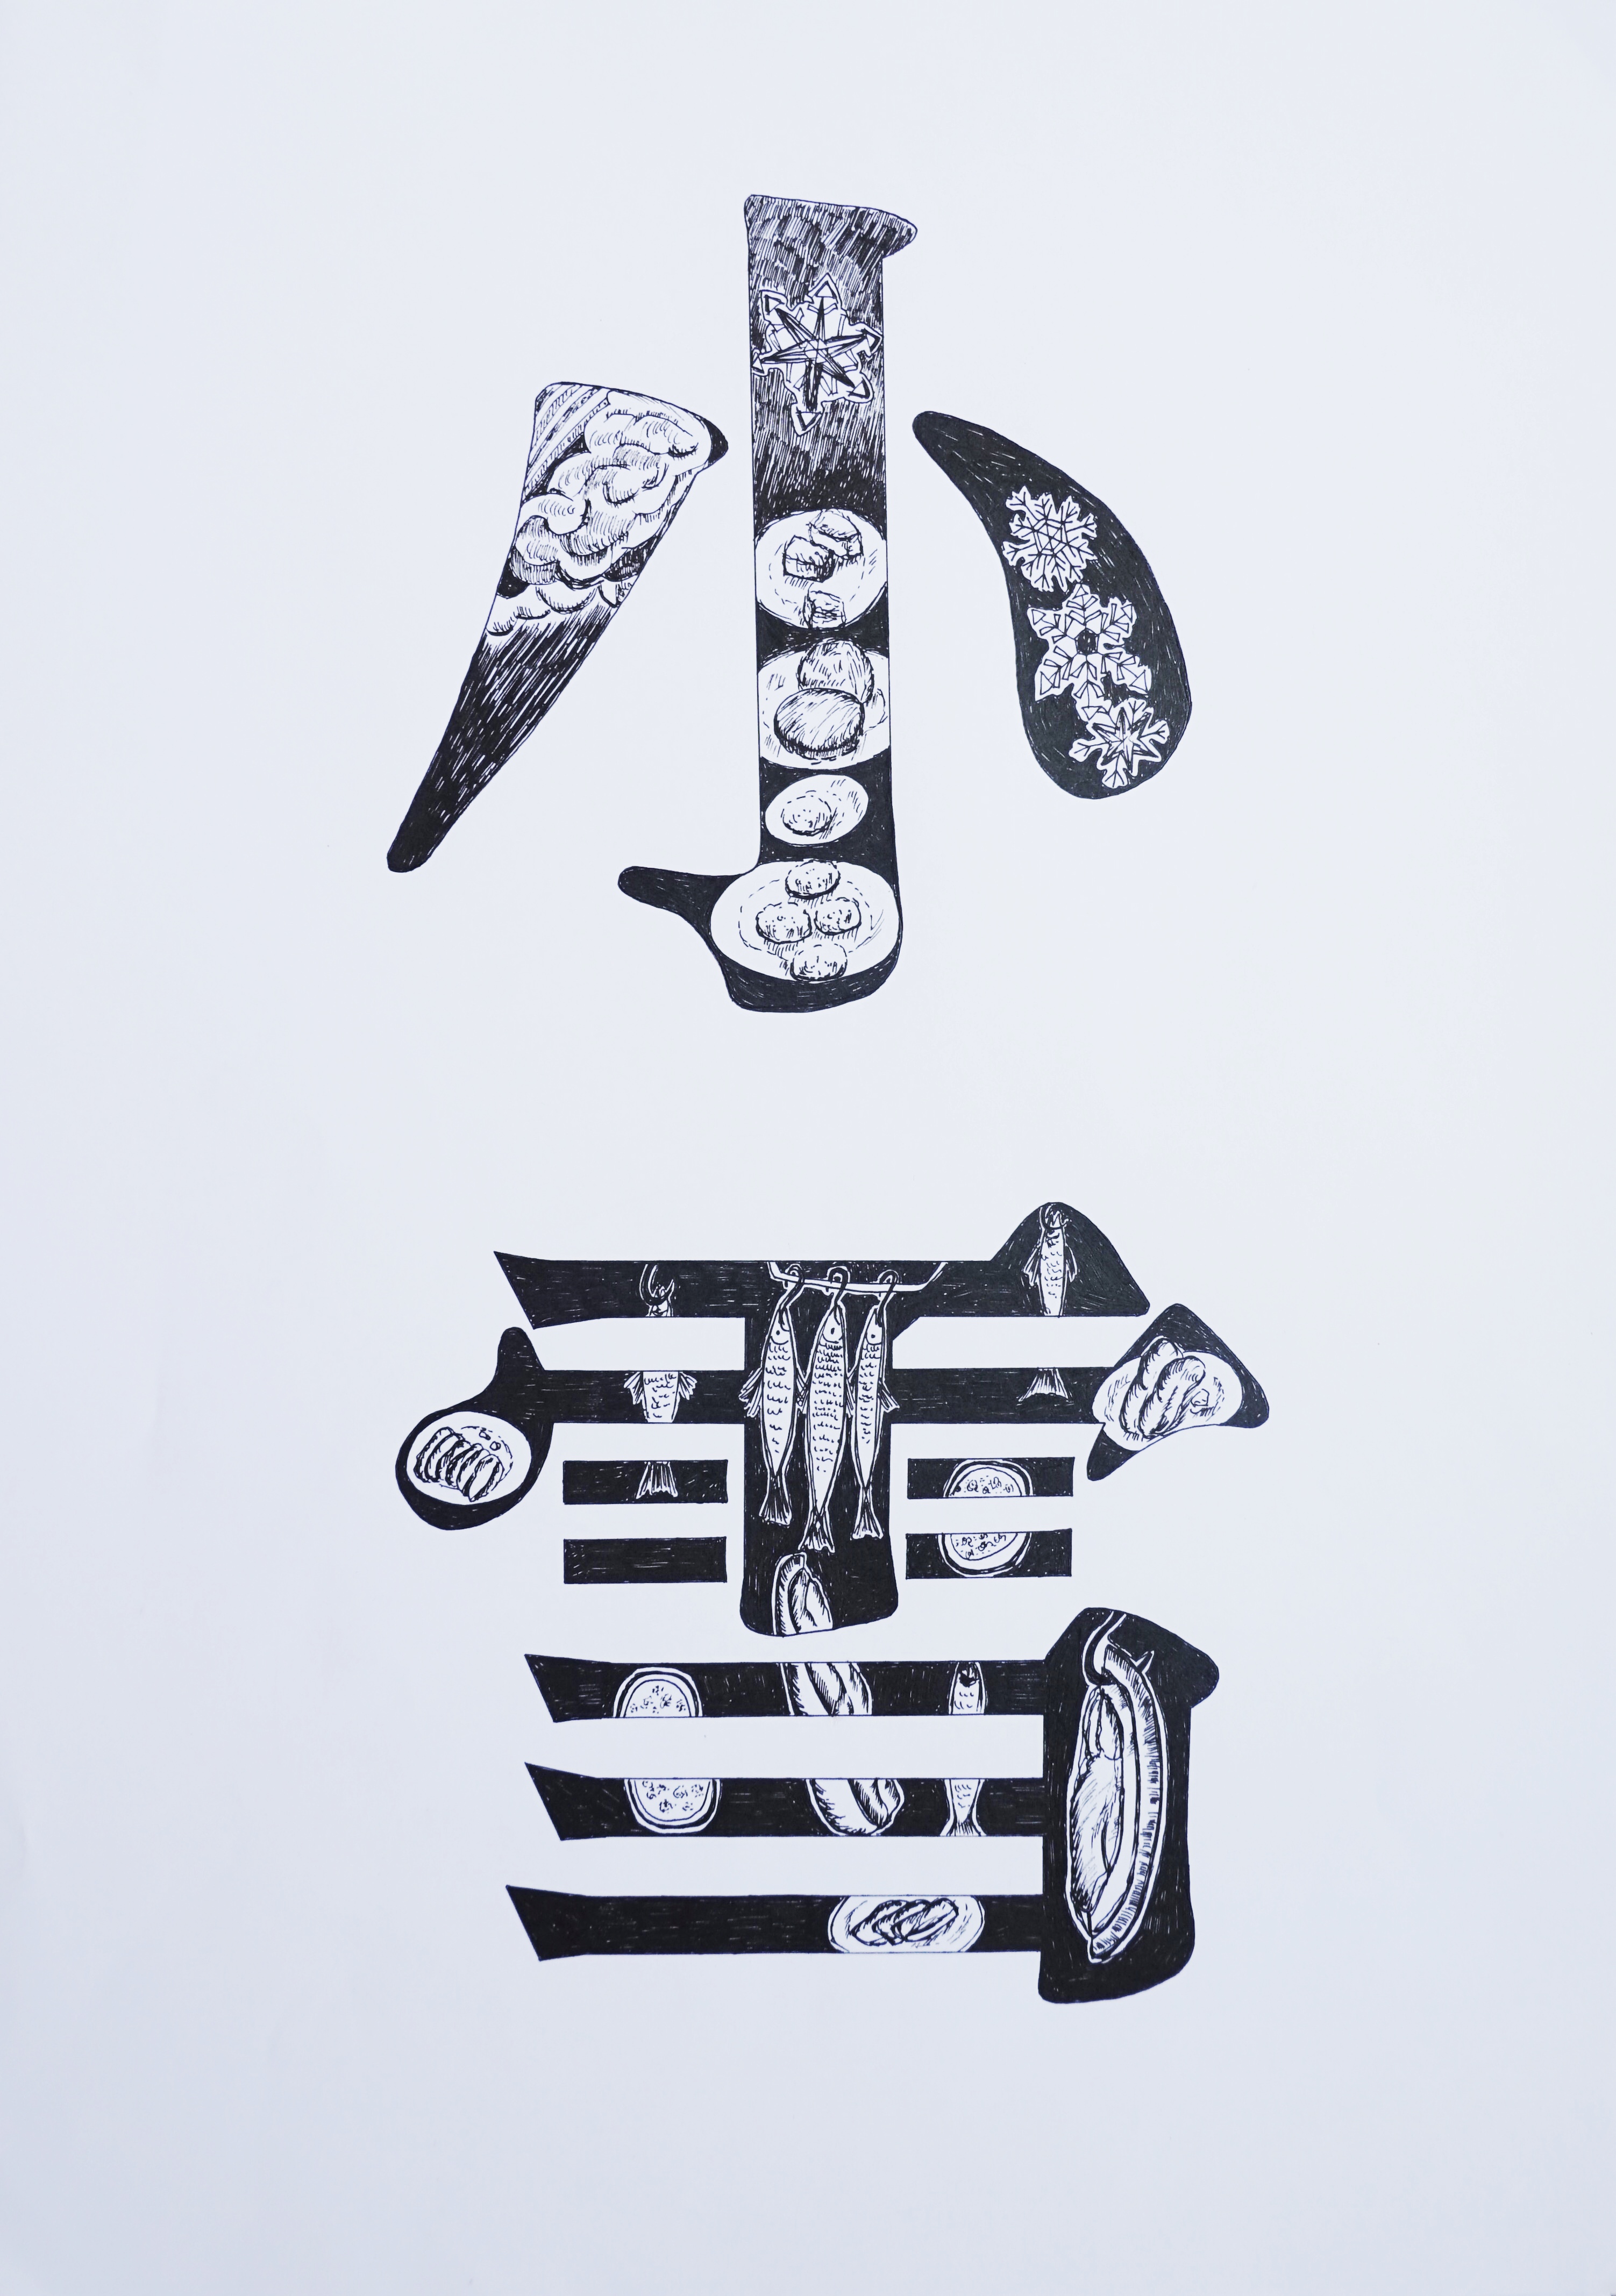 二十四节气字体装饰设计手绘2020a国际绘画奖提名